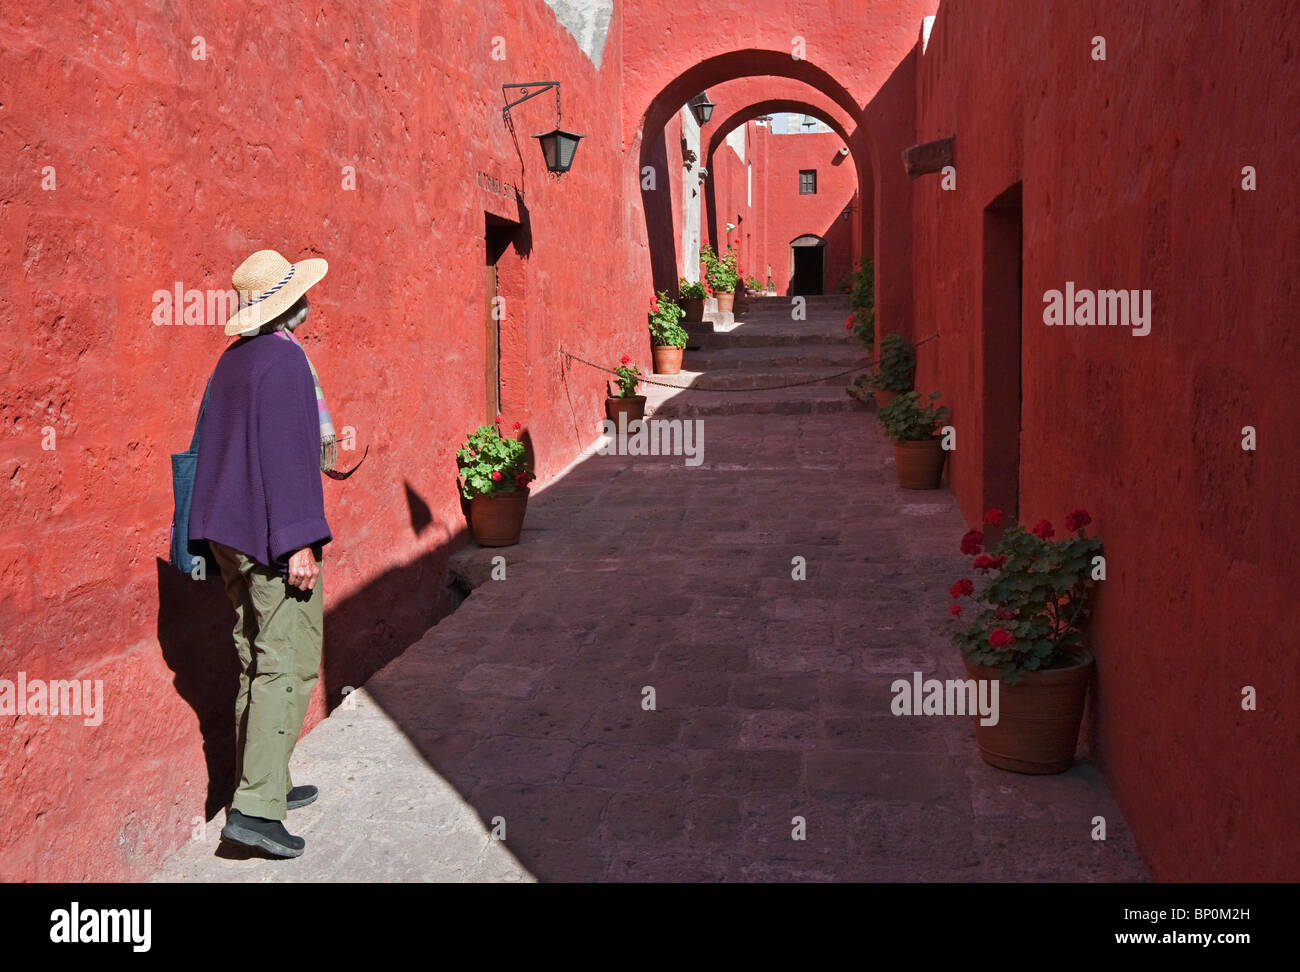 Pérou, murs rouge vif d'un passage dans le magnifique couvent de Santa Catalina, fondé en 1580. Banque D'Images